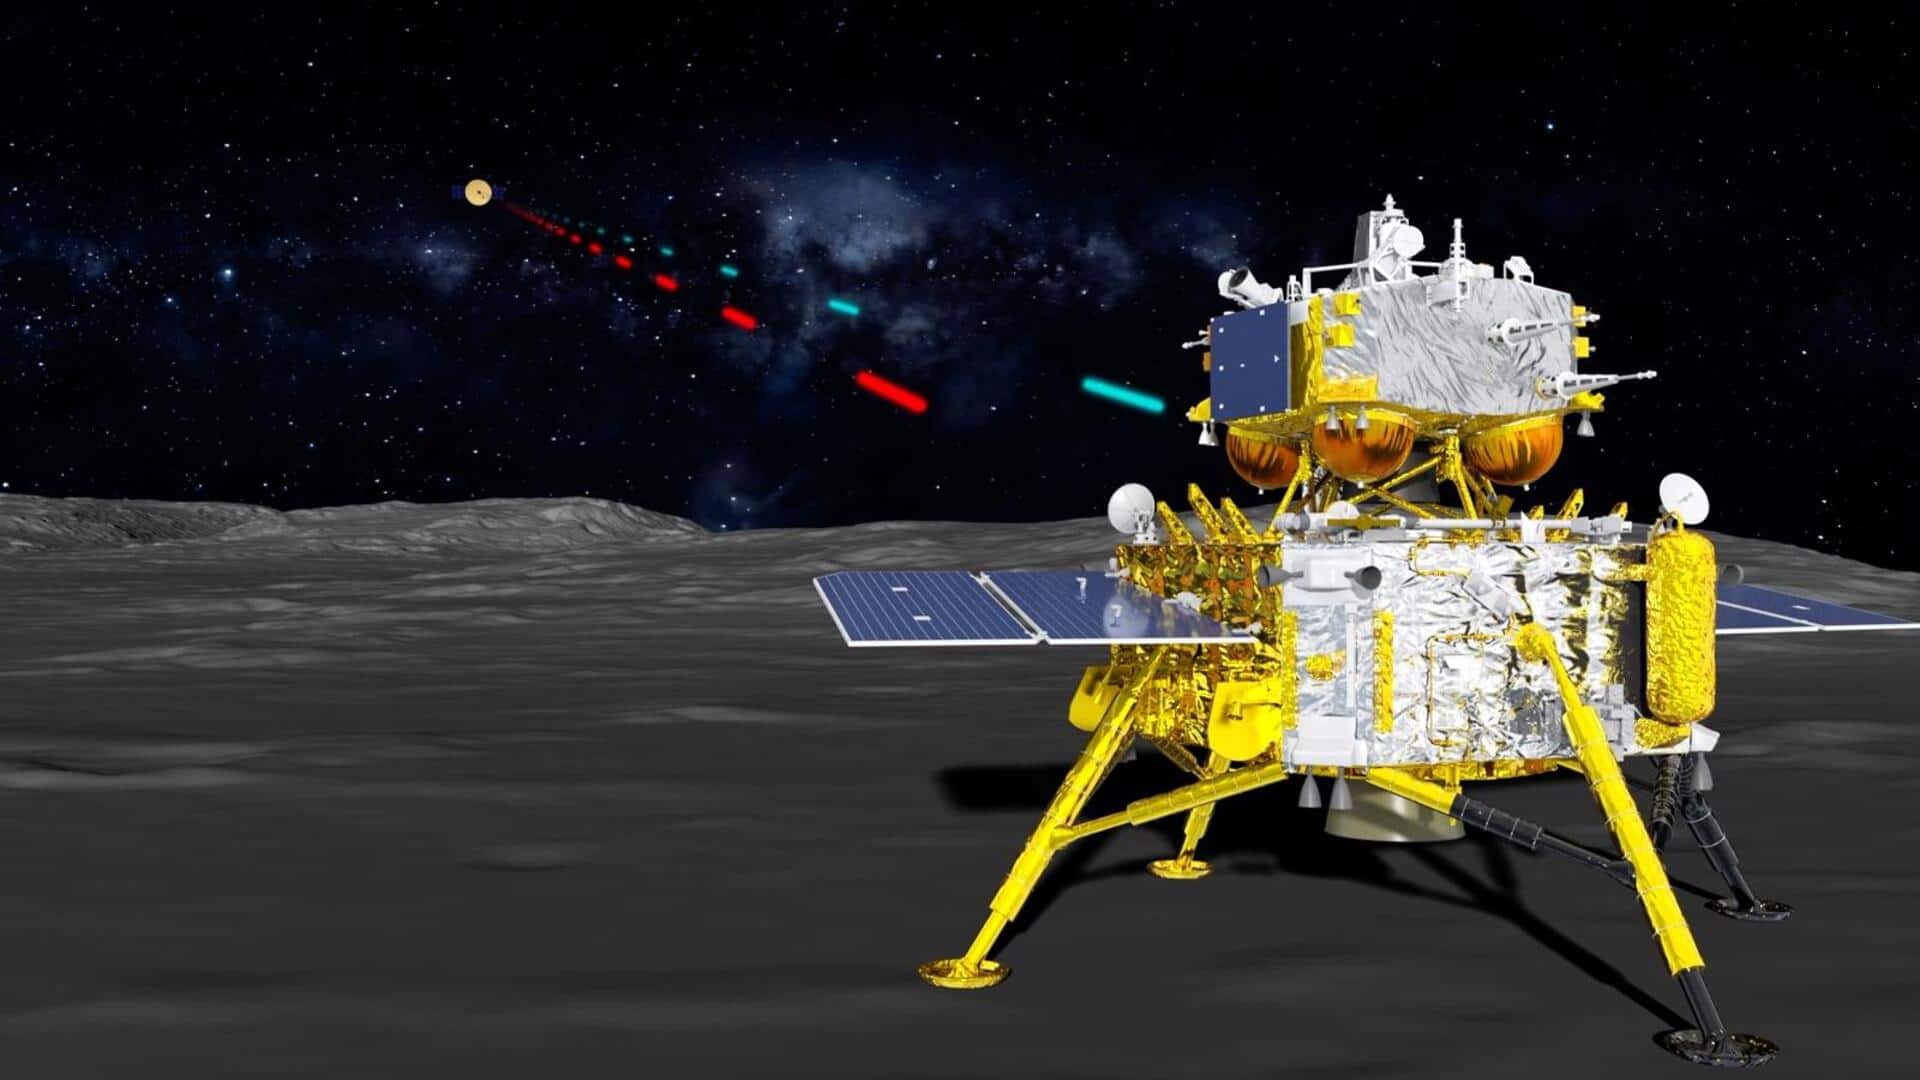 चीन का चांग ई-6 अंतरिक्ष यान चंद्रमा से सैंपल लेकर पृथ्वी पर आ रहा वापस